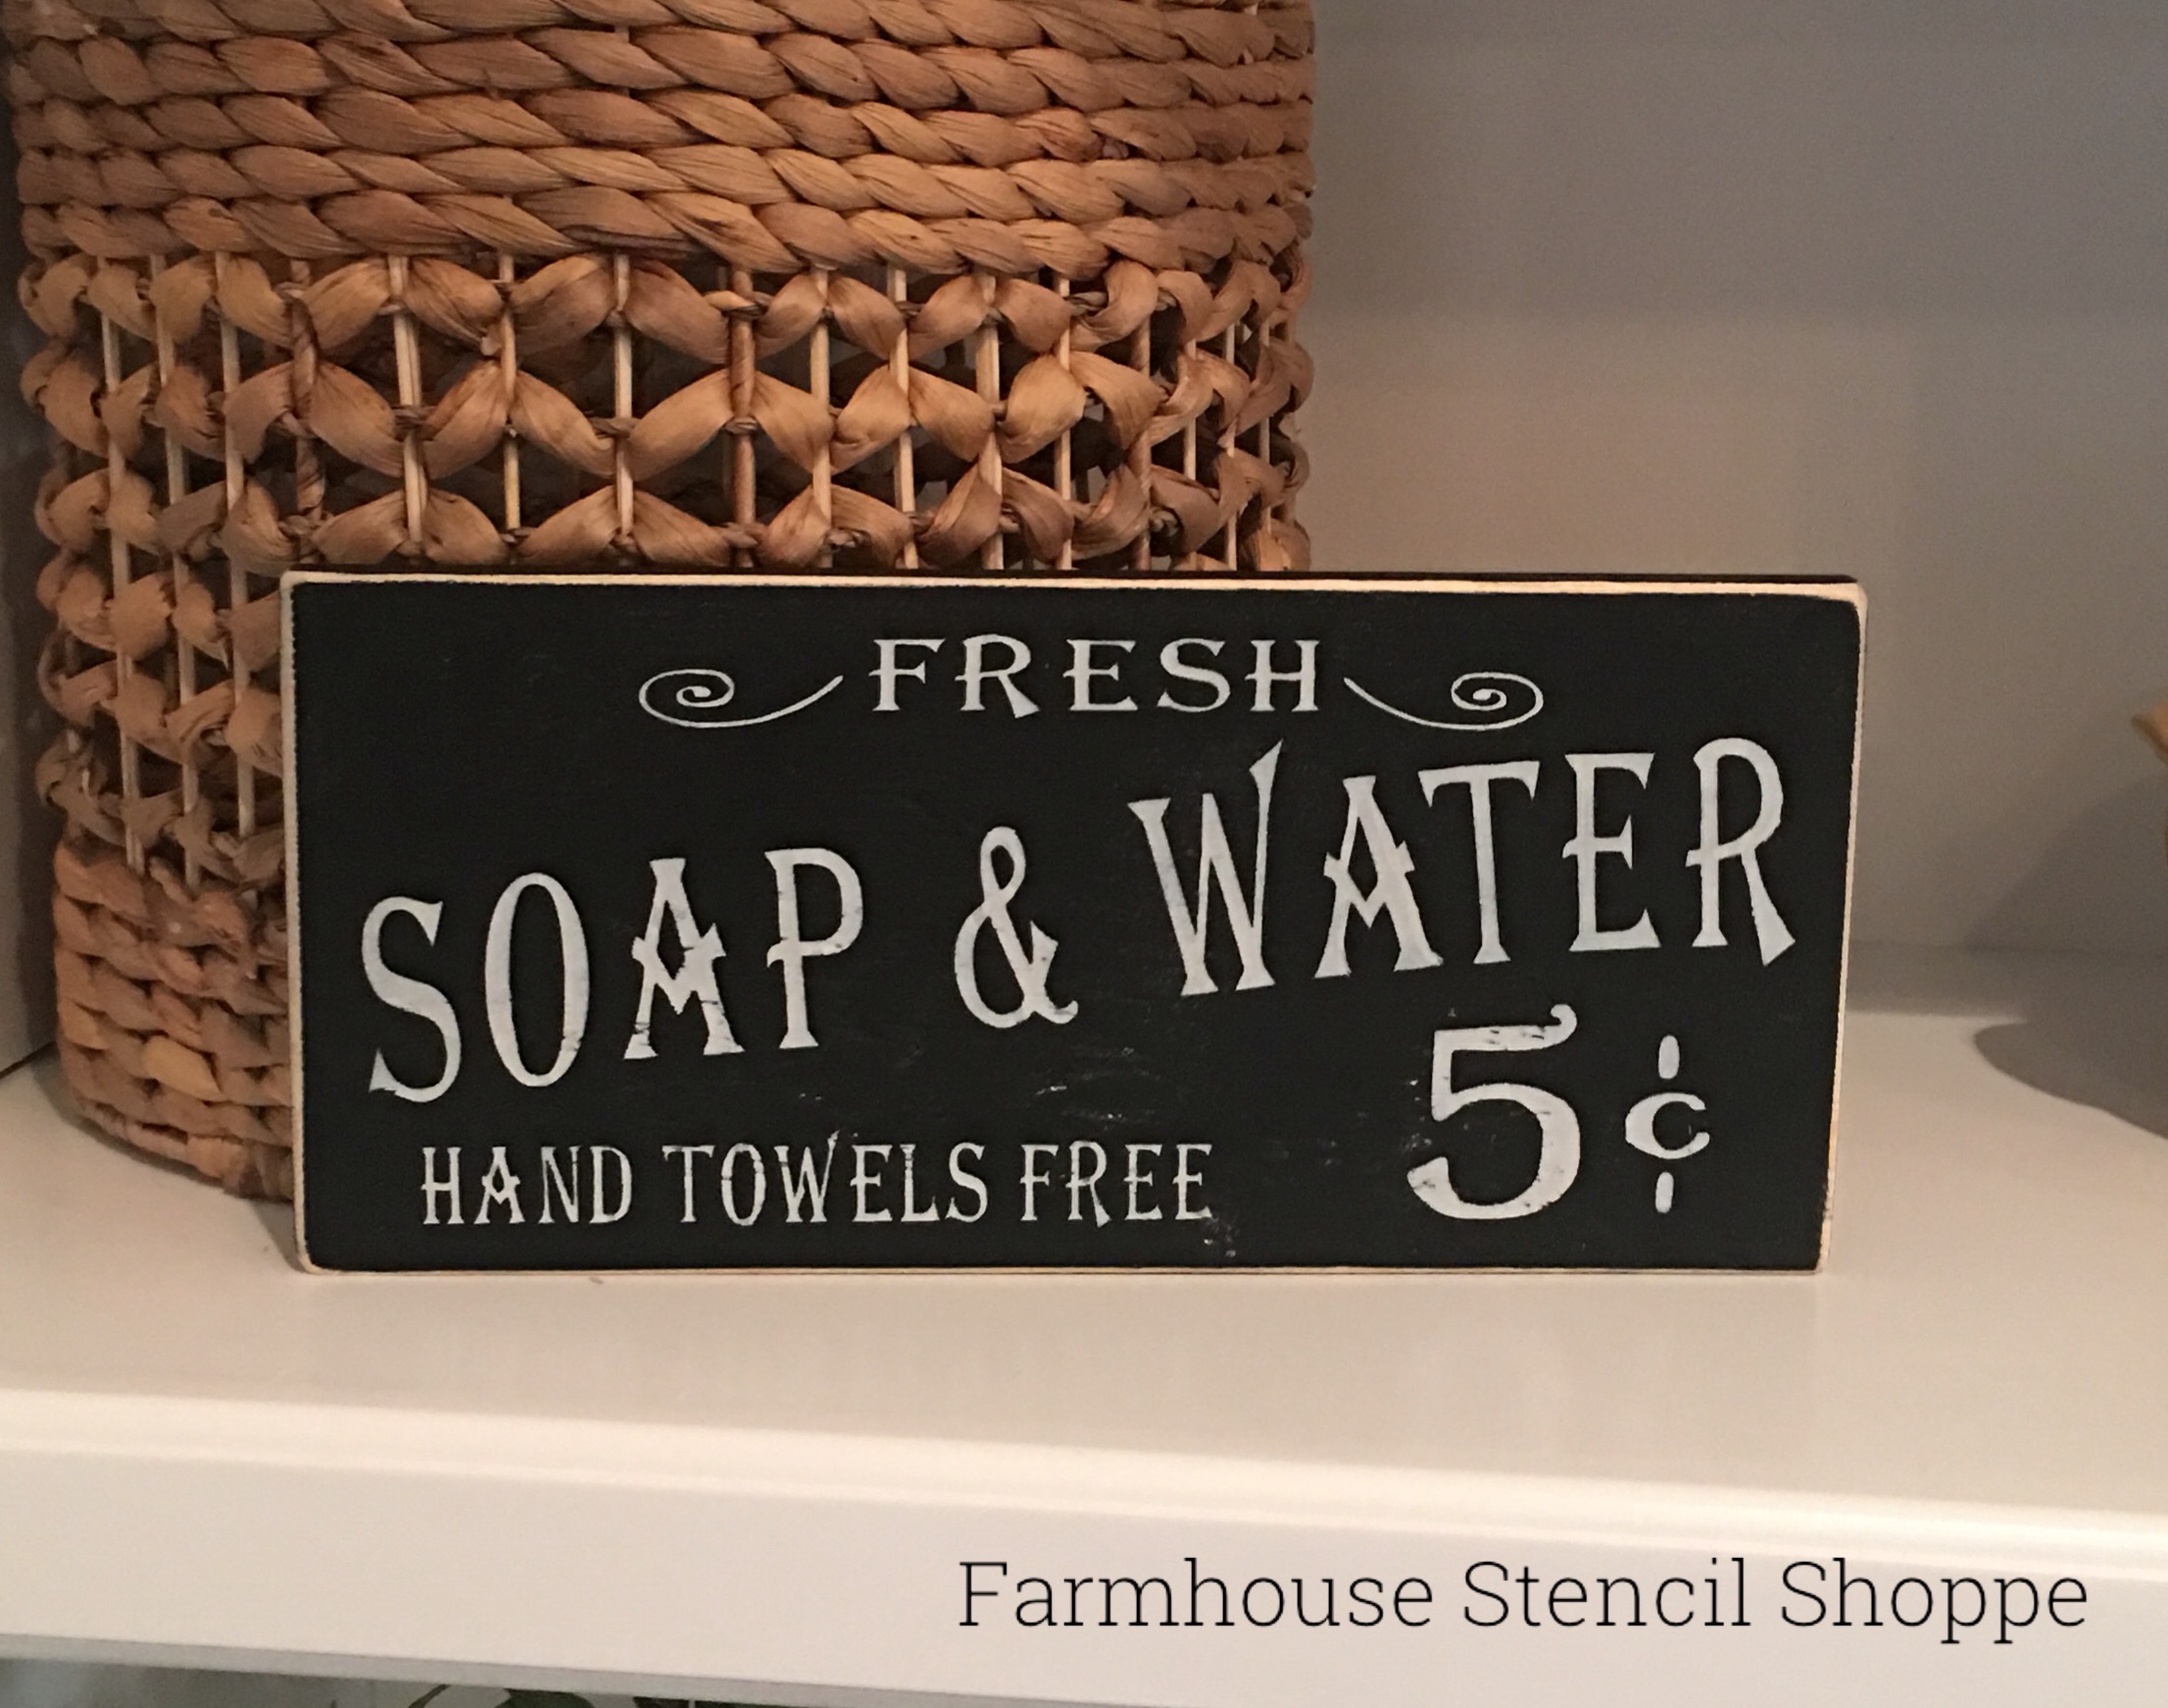 Soap & Water 5Â¢, 12"x5.5"